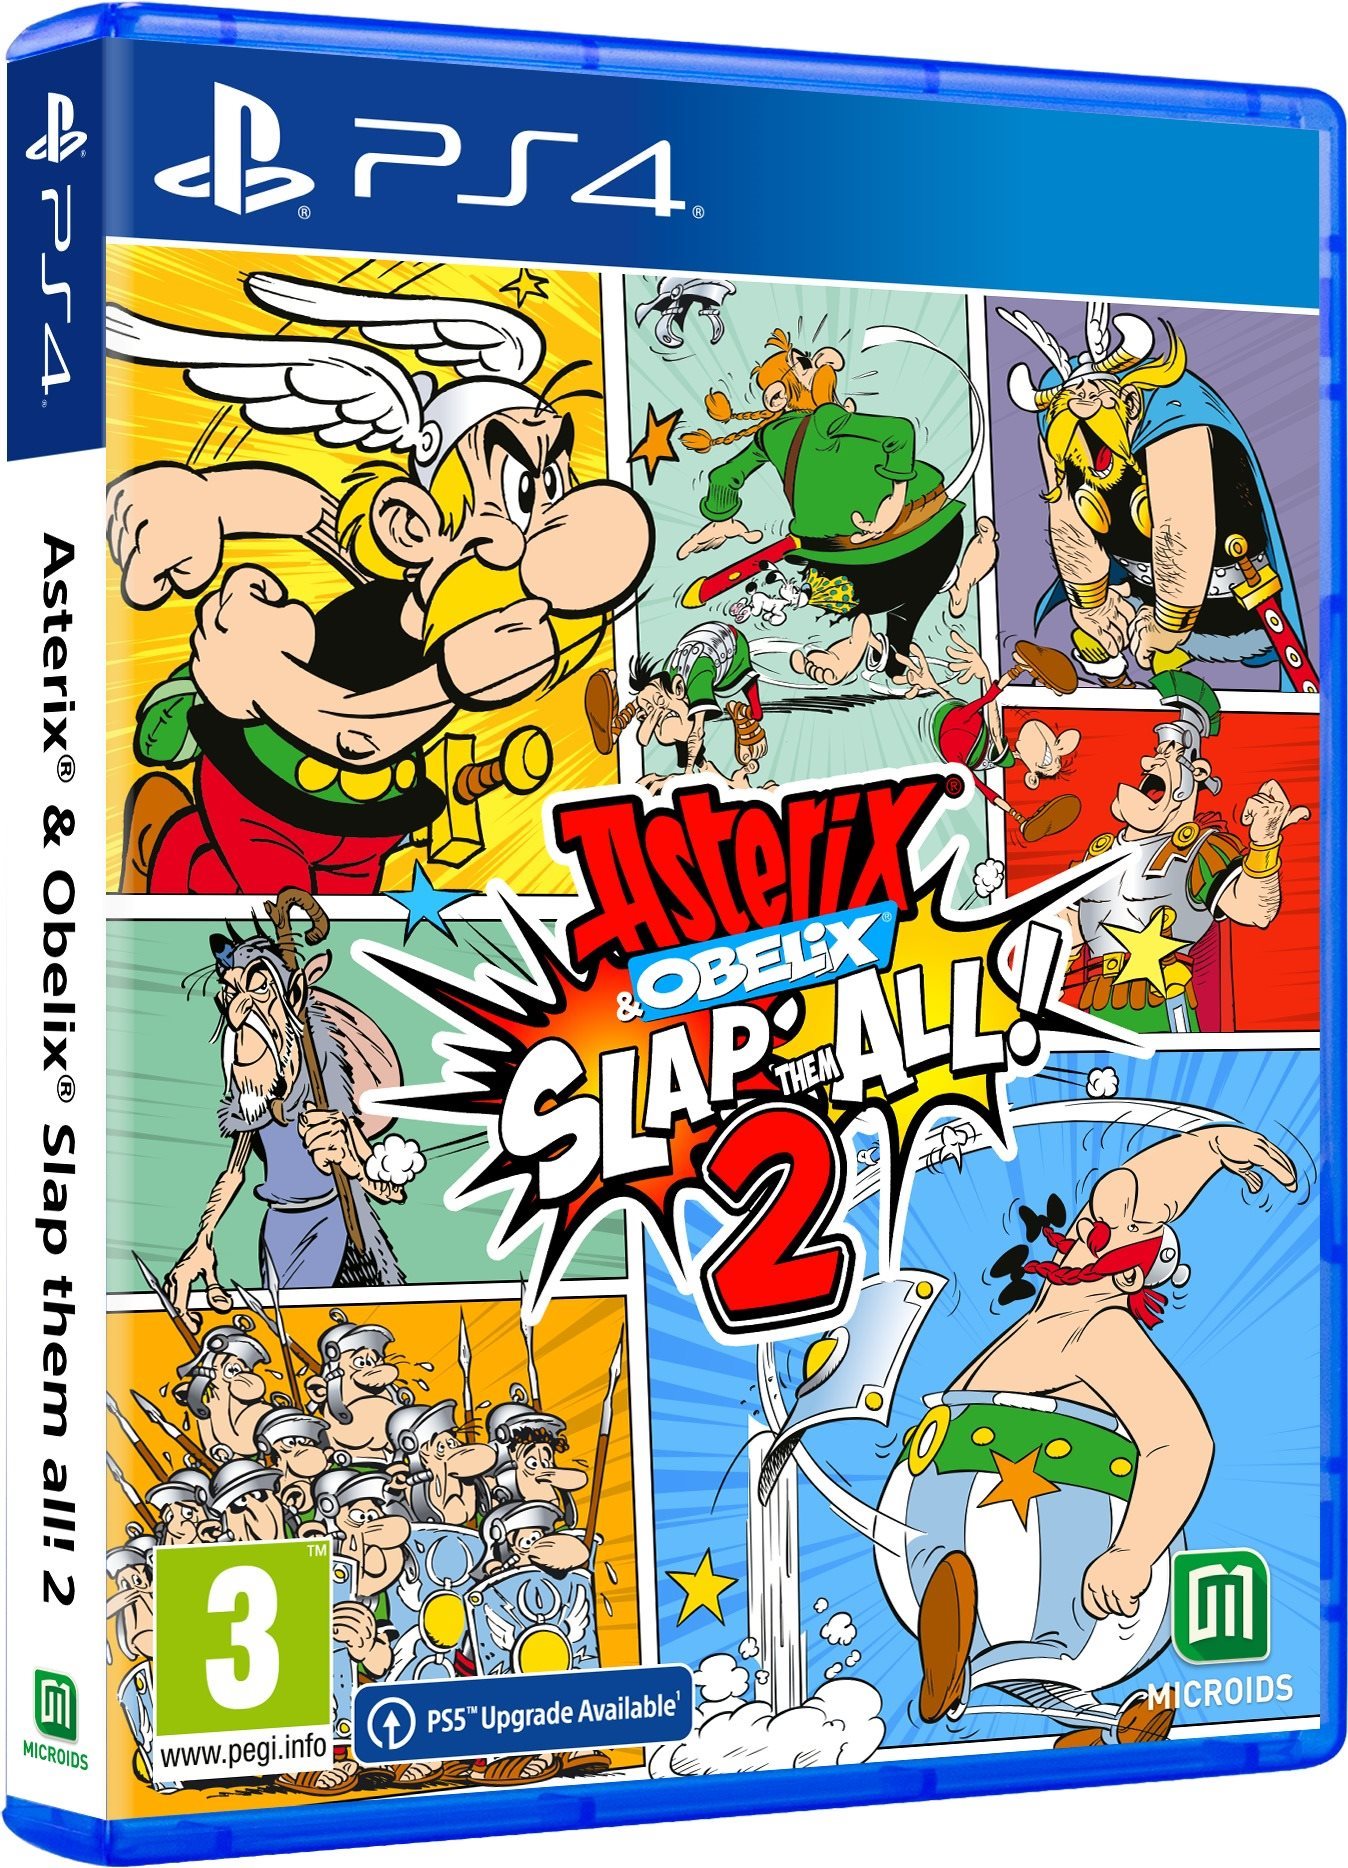 Asterix and Obelix: Slap Them All! 2 - PS4